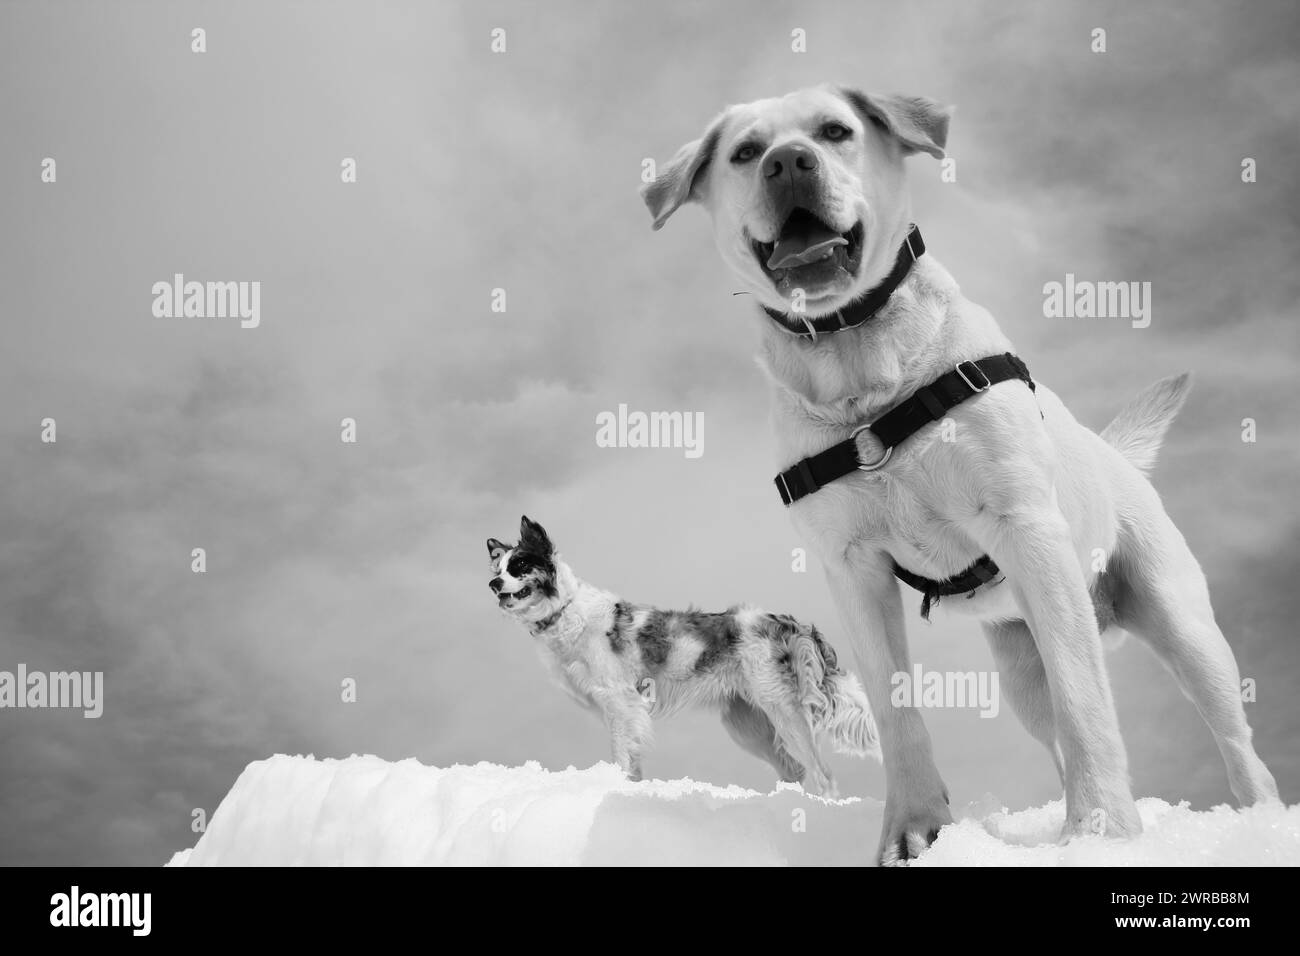 Deux chiens de tailles différentes jouent sur un fond enneigé, des chiens étonnants dans la nature Banque D'Images